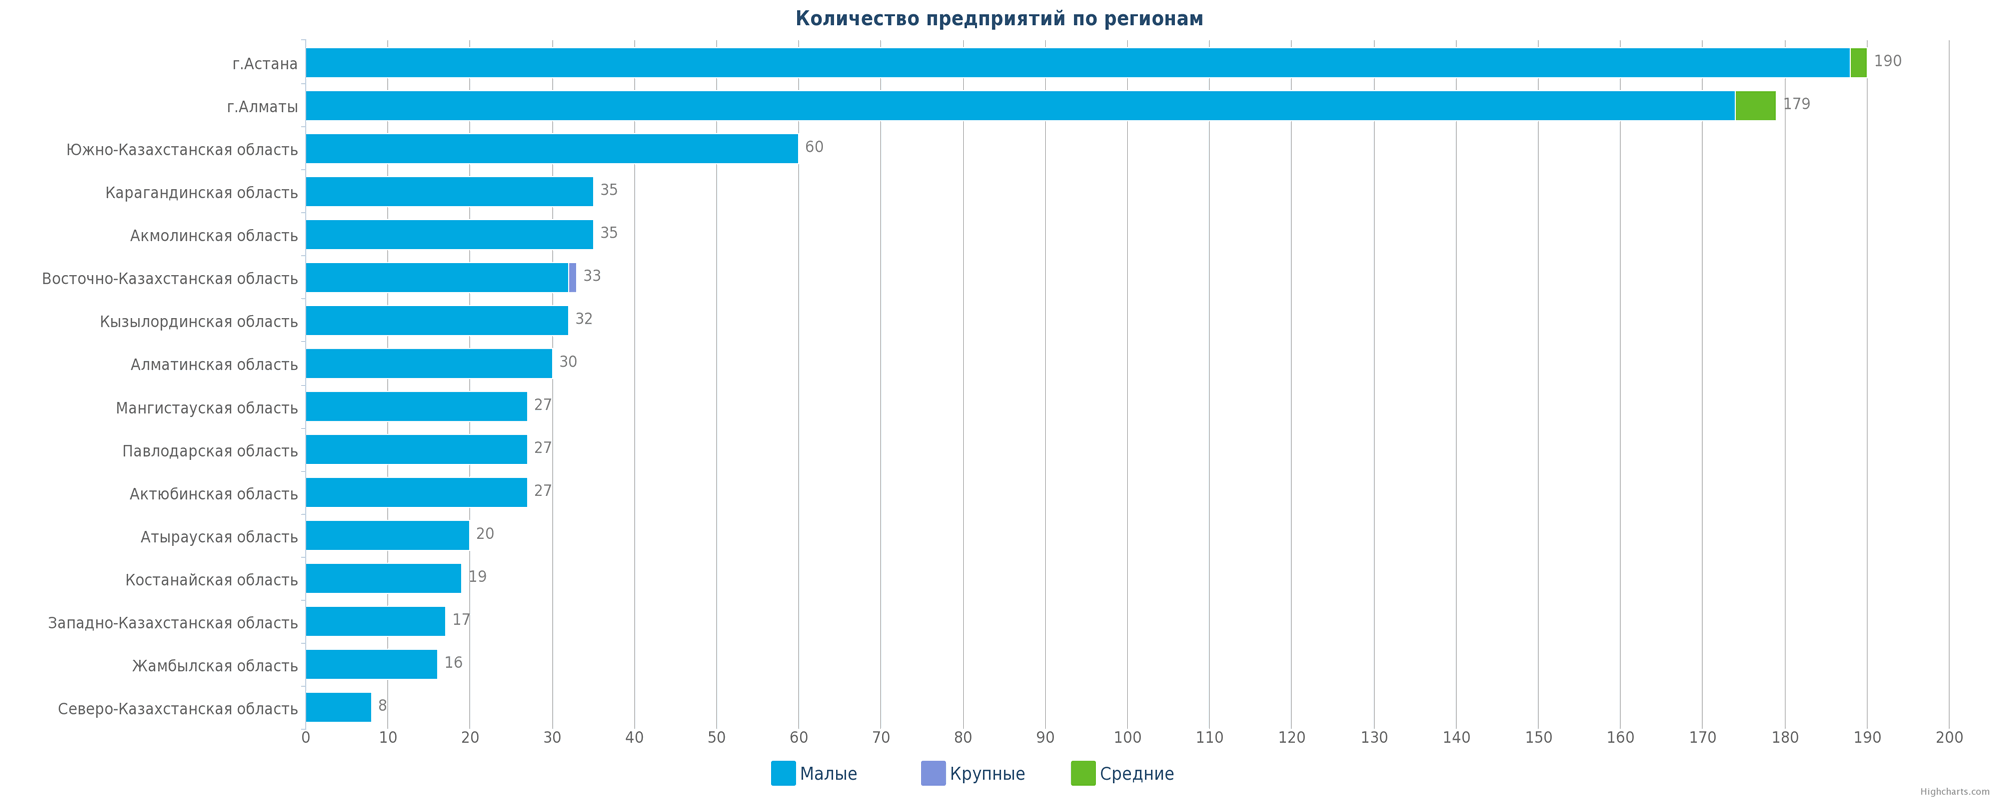 Количество предприятий в регионах Казахстана